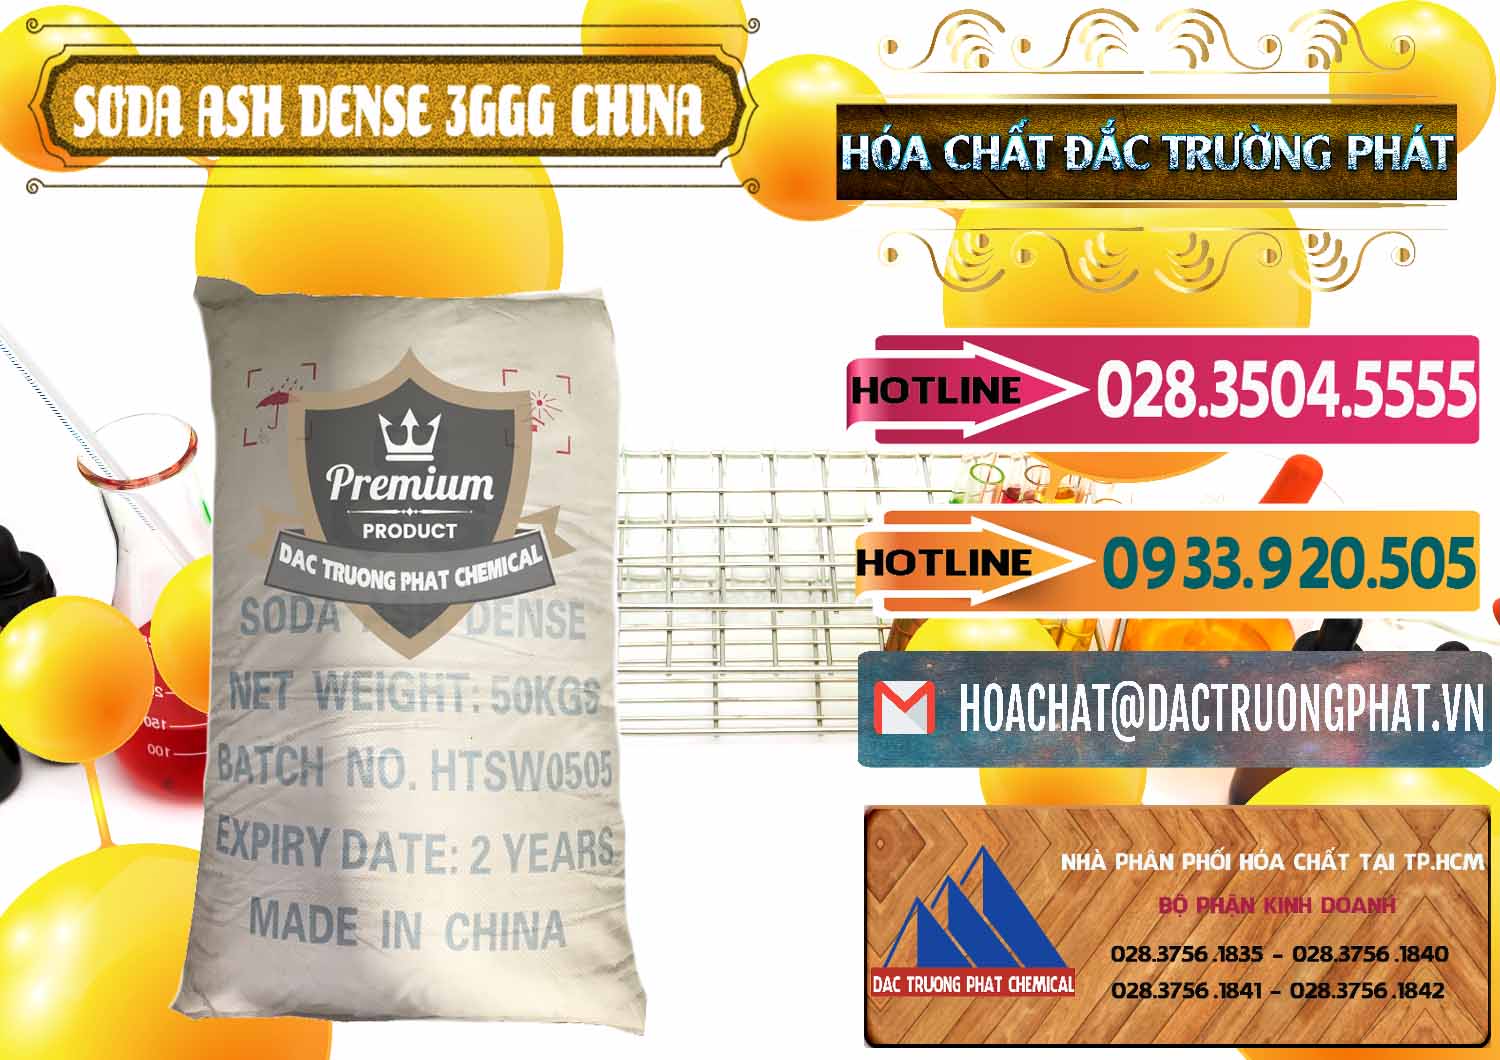 Cty nhập khẩu - bán Soda Ash Dense - NA2CO3 3GGG Trung Quốc China - 0335 - Cty chuyên cung cấp & bán hóa chất tại TP.HCM - dactruongphat.vn